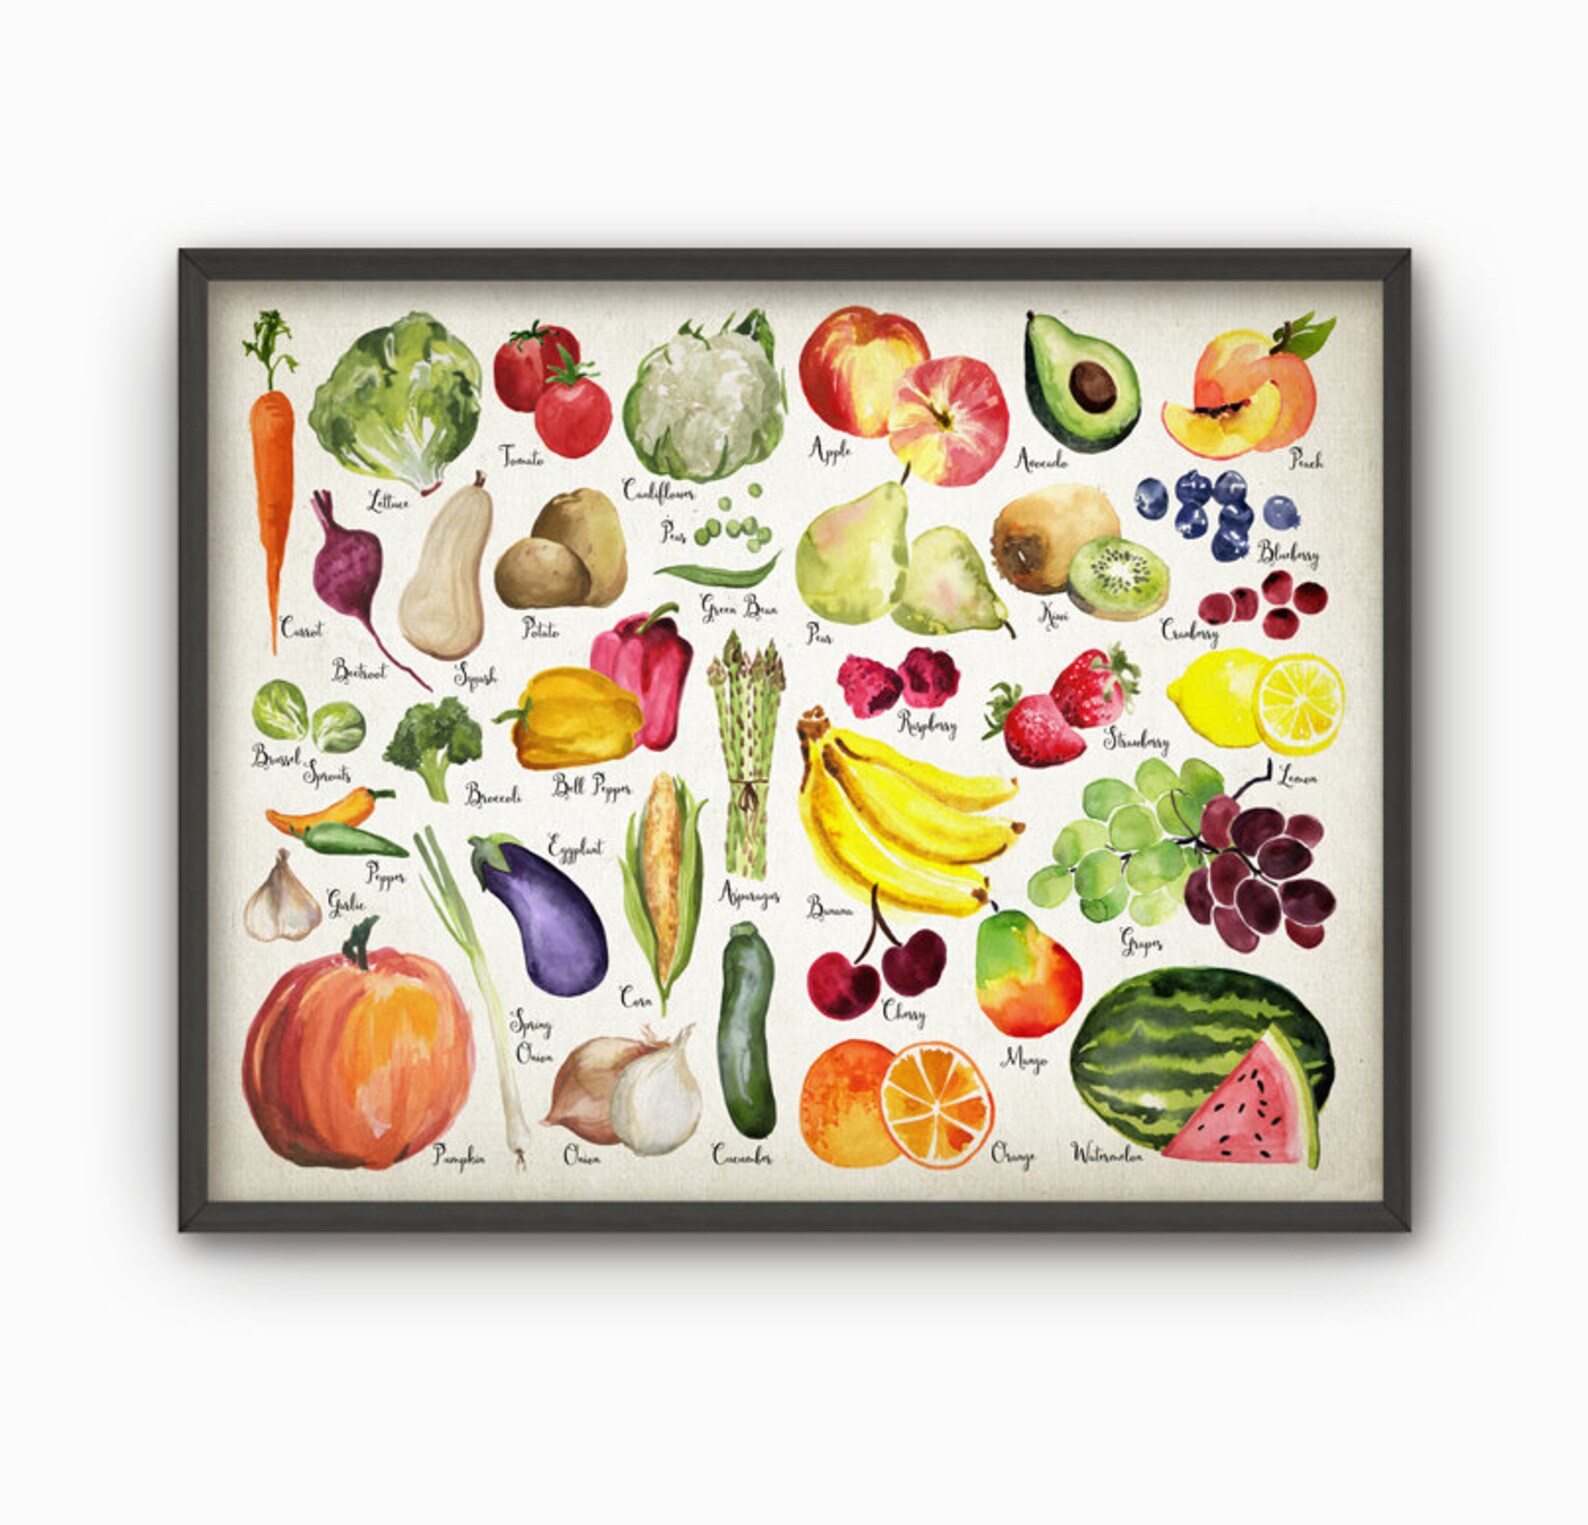 Wordwall vegetables. Плакат овощи и фрукты. Постер овощи. Постеры с фруктами и овощами. Кухонные плакаты с овощами.